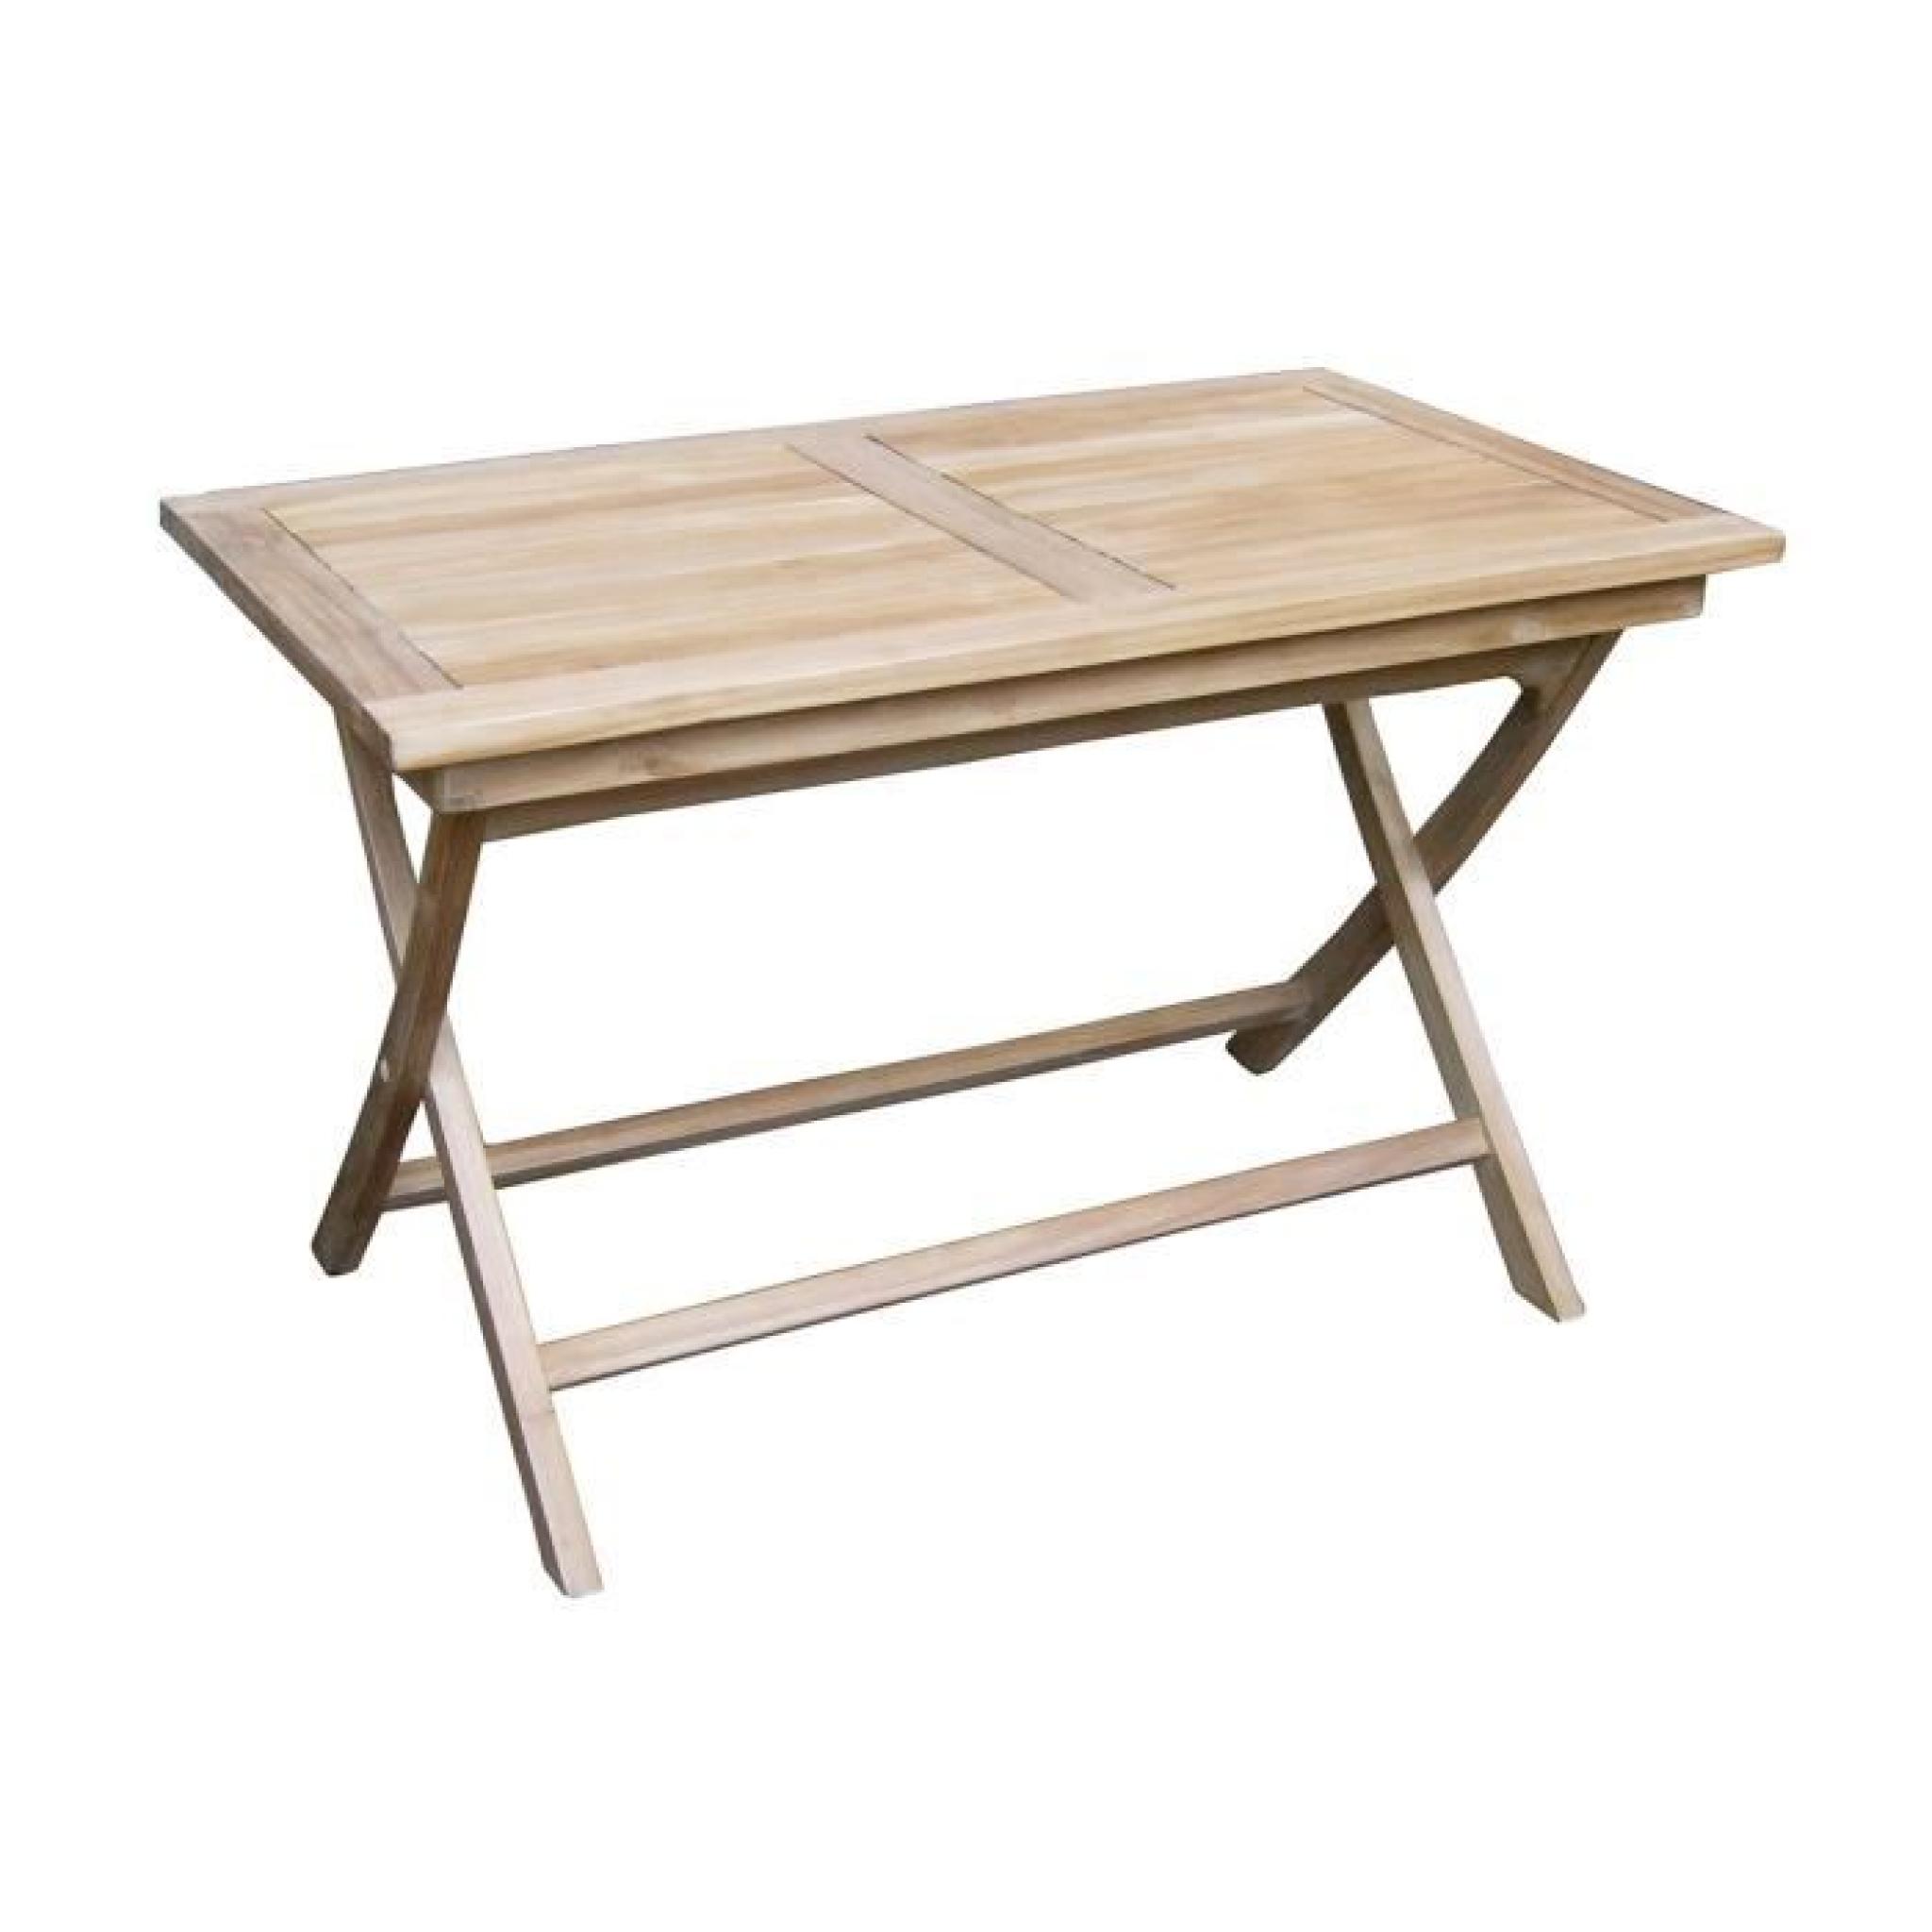 Table pliante pour jardin en bois teck, coloris naturel - Dim : 75 x 120 x 70 cm